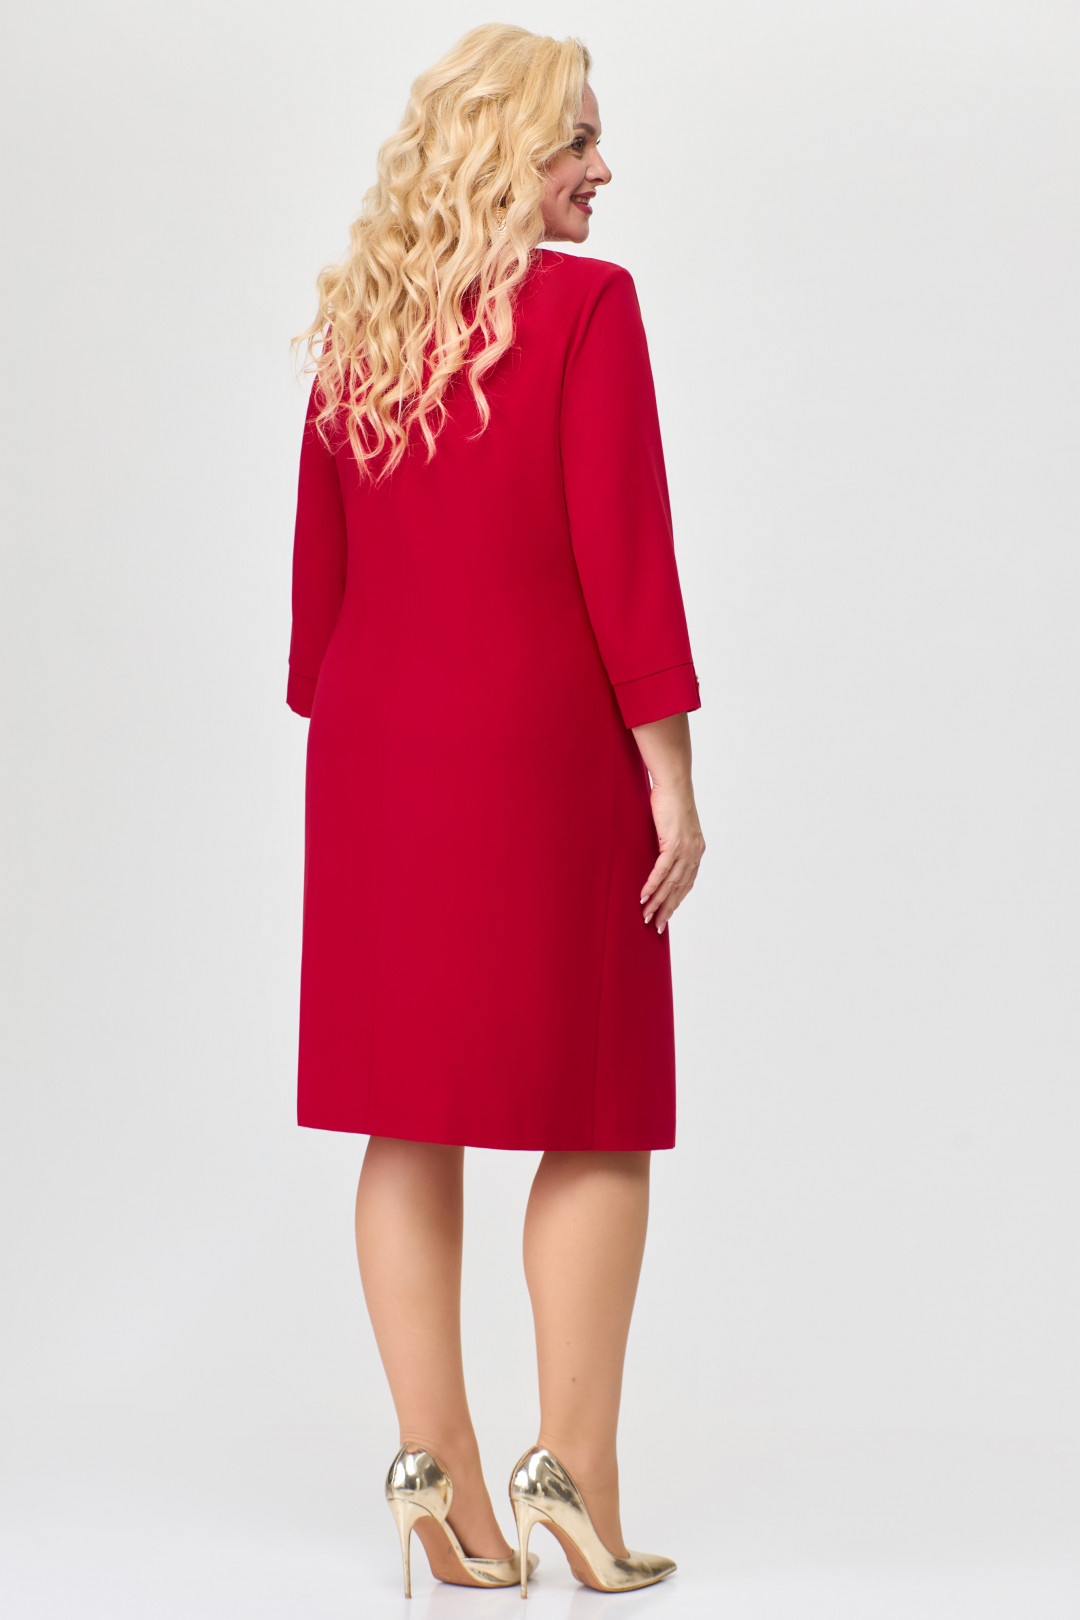 Платье Светлана-Стиль 1658 красный